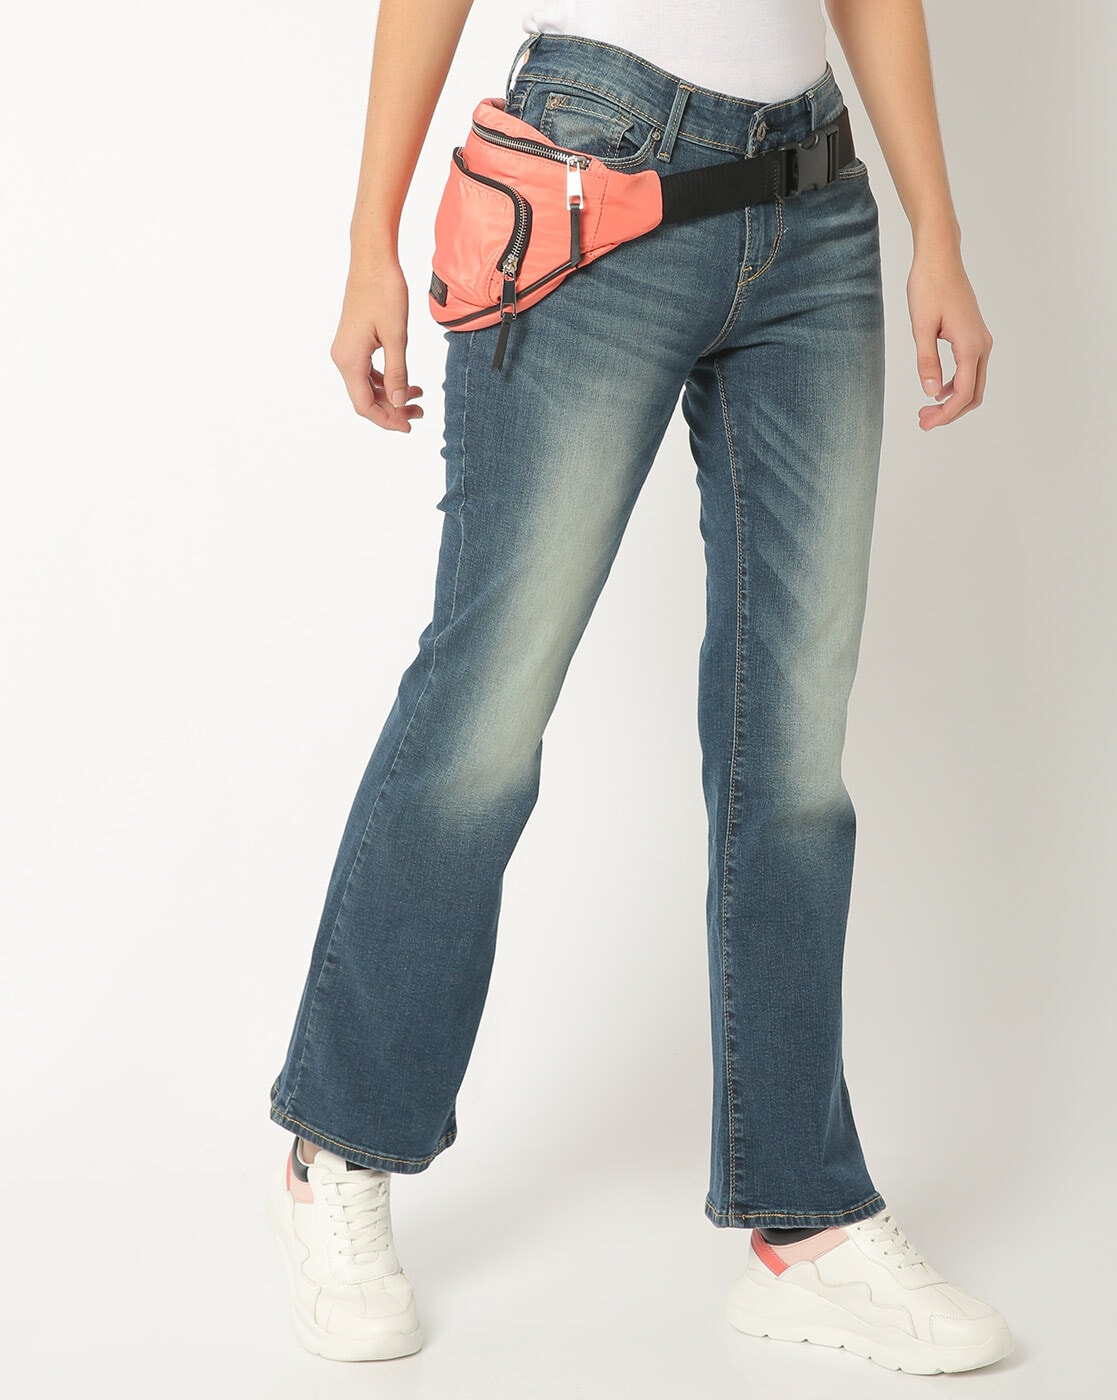 Buy Blue Jeans & Jeggings for Women by DENIZEN WOMENS Online 